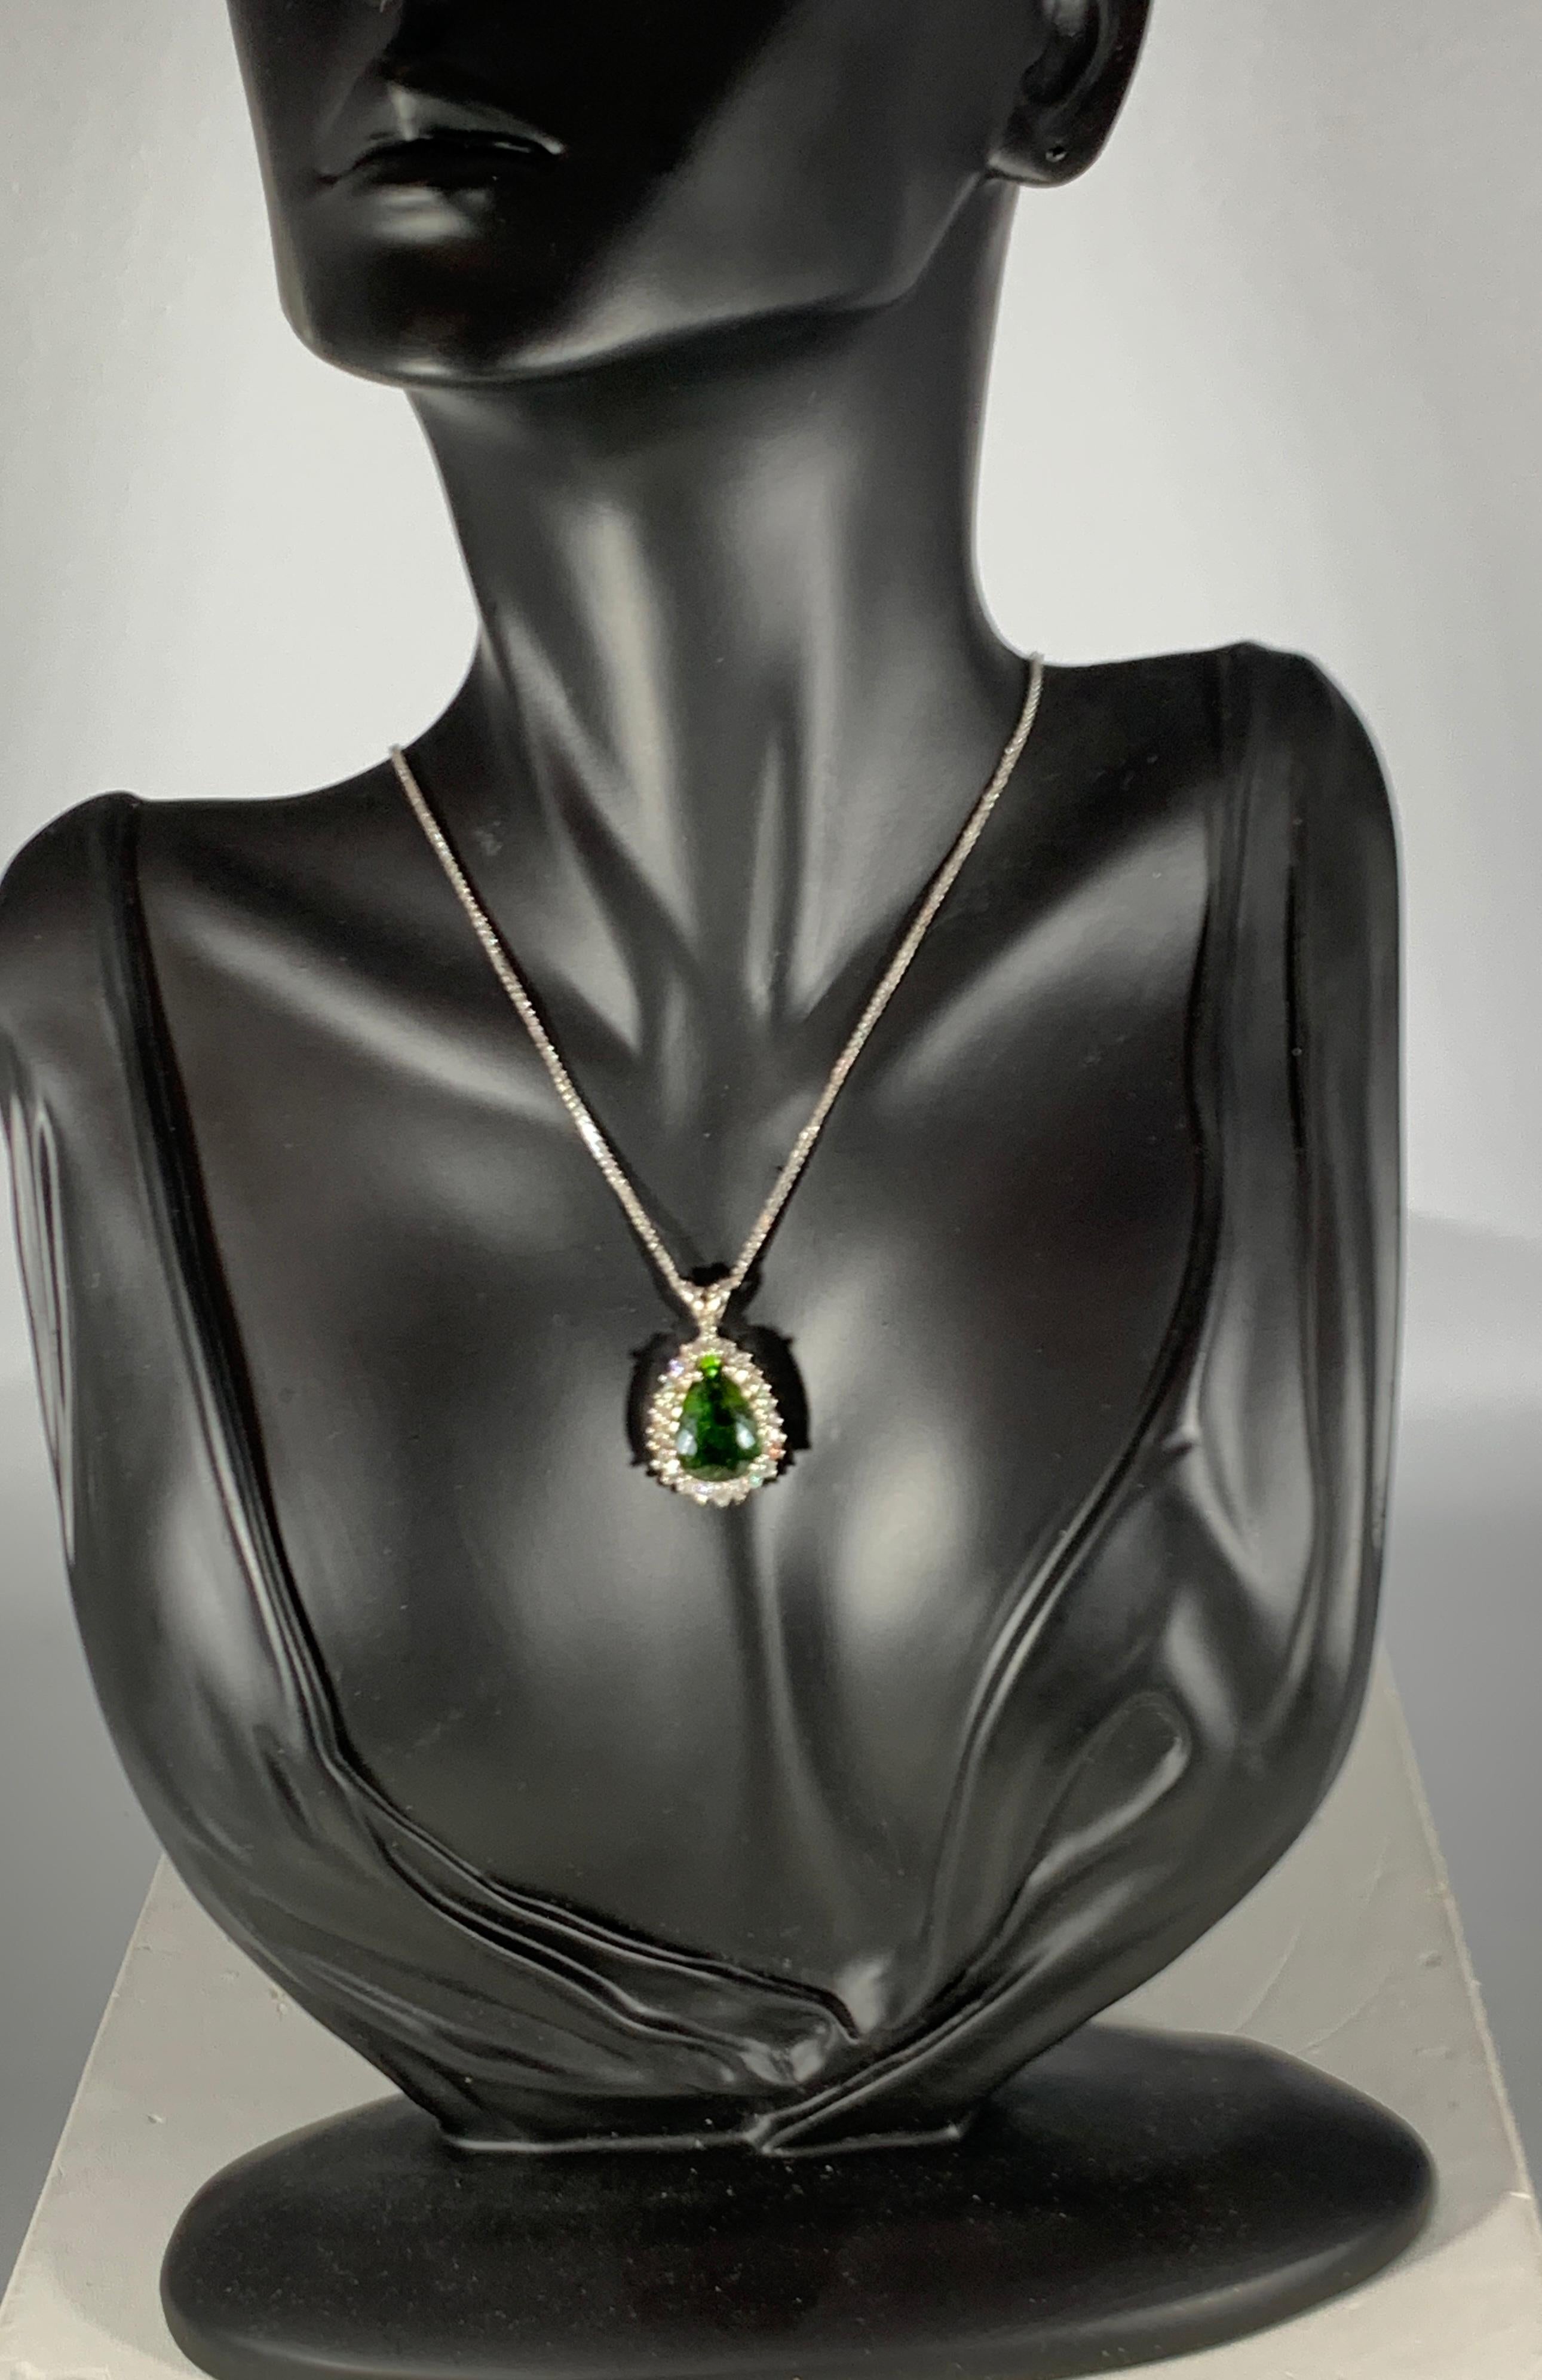 8 Carat Green Tourmaline and 1.5 Carat Diamond Pendant or Necklace 14 Karat Gold 1